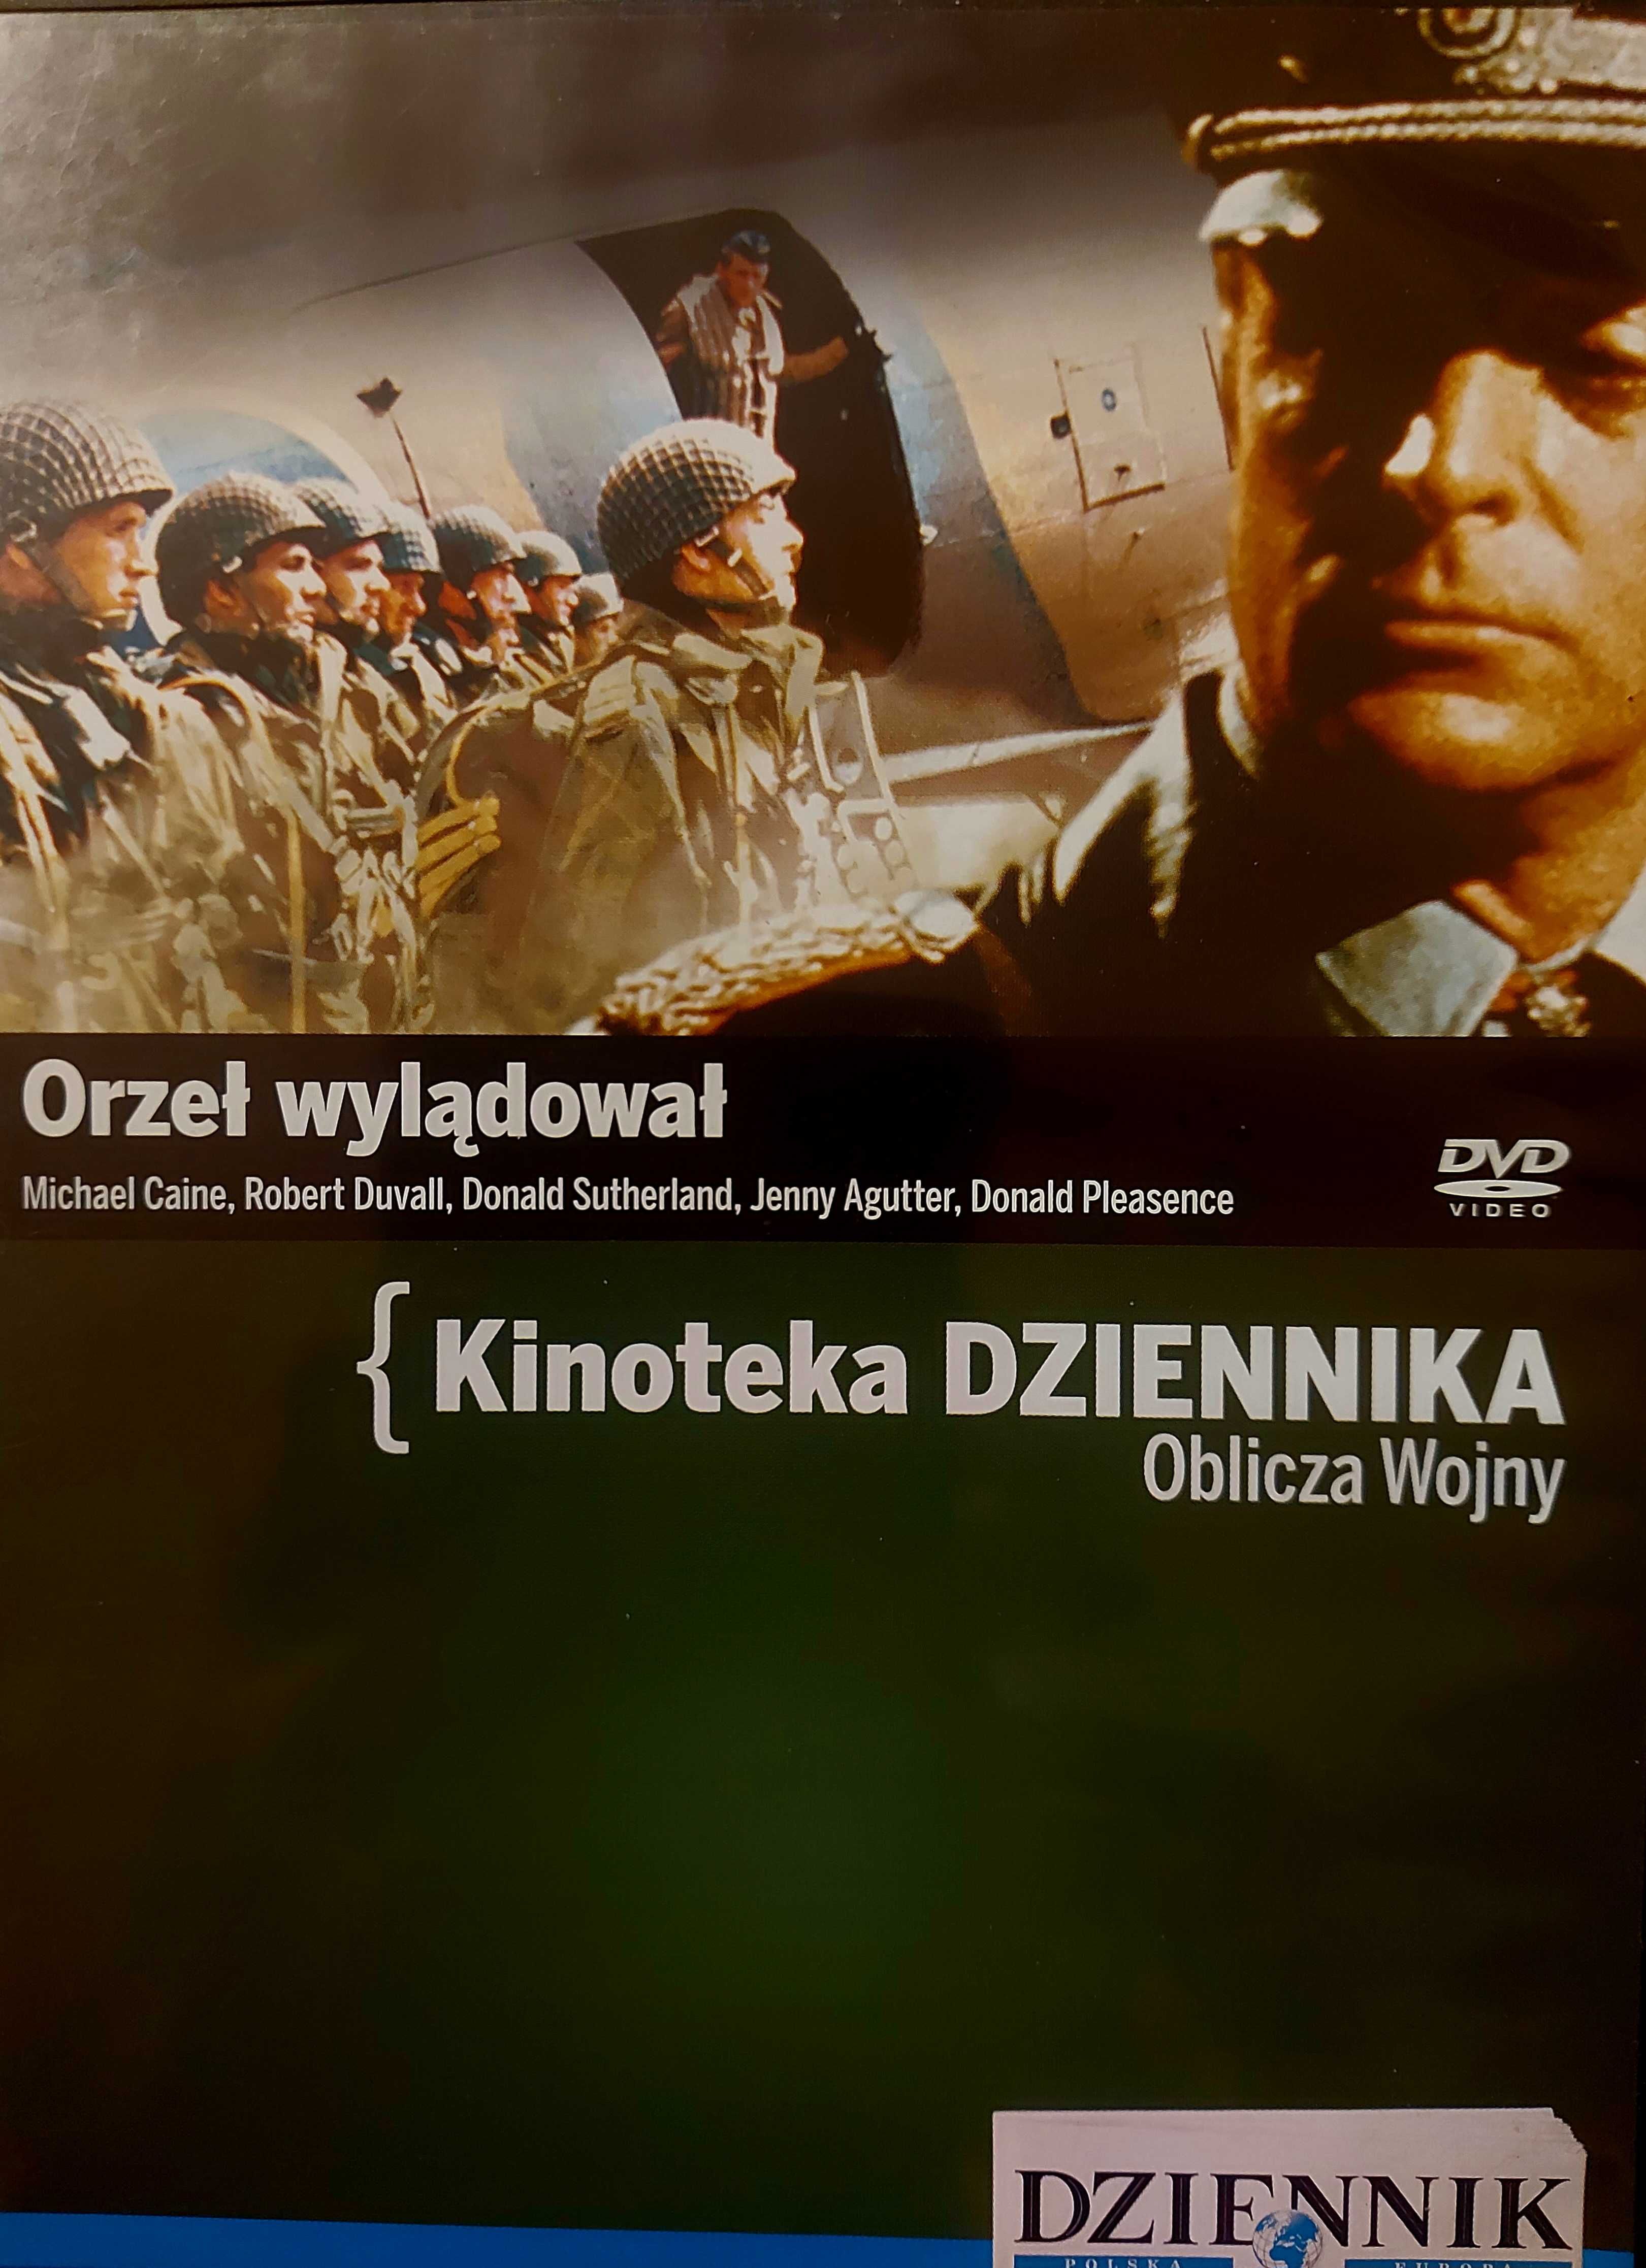 Filmy na płytach DVD - oblicza wojny